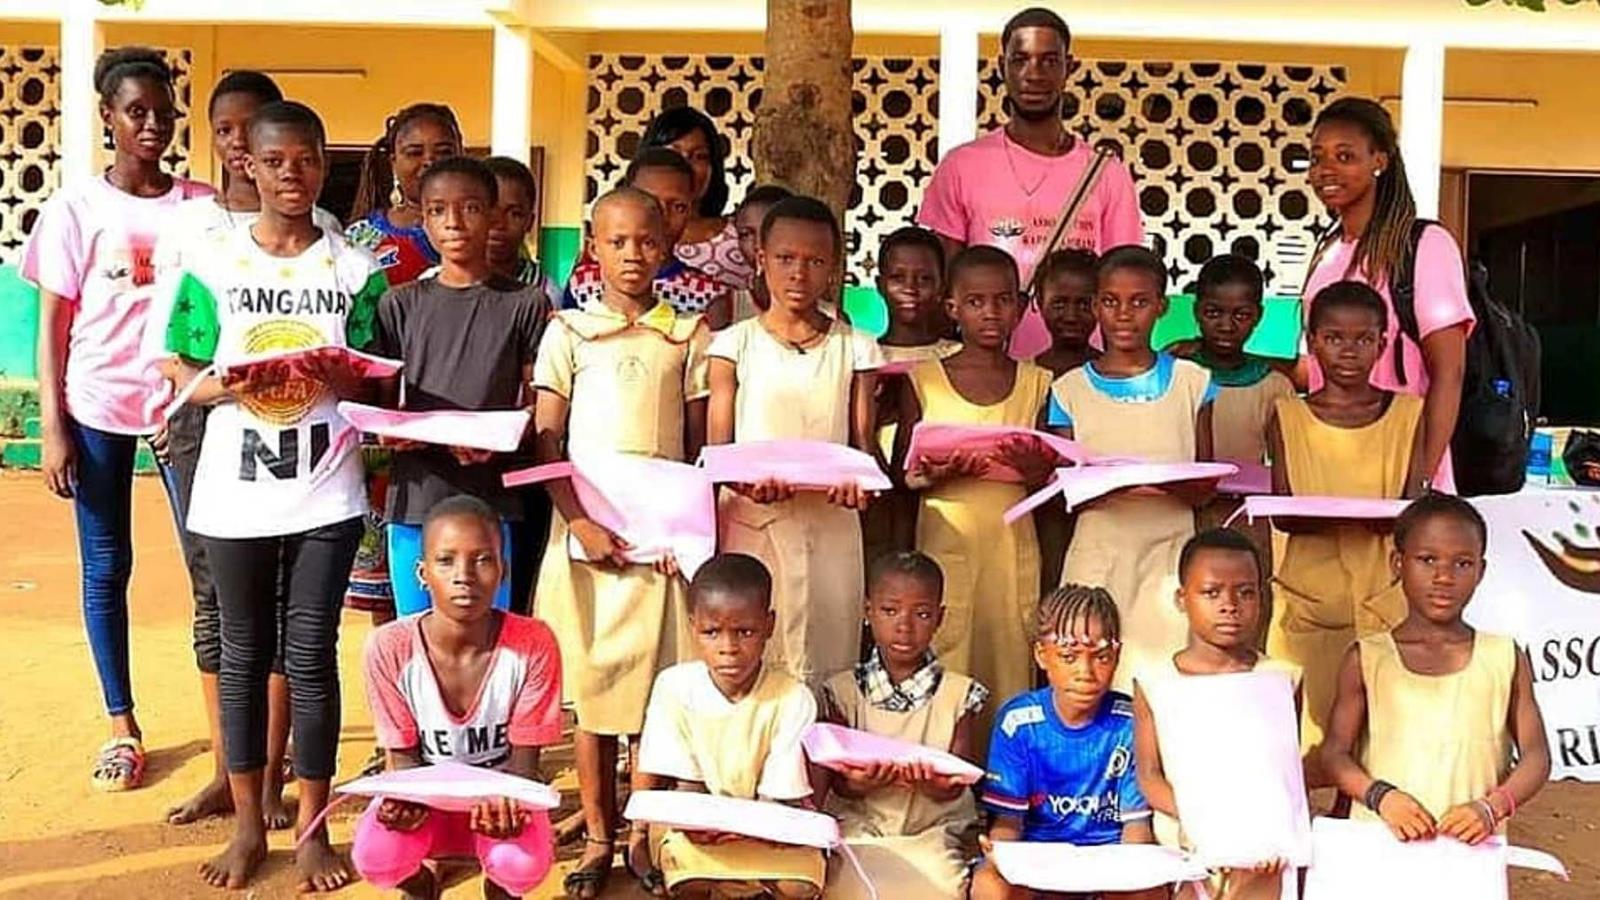 المنظمة وزعت أدوات مدرسية على أطفال في البنين(الجزيرة)